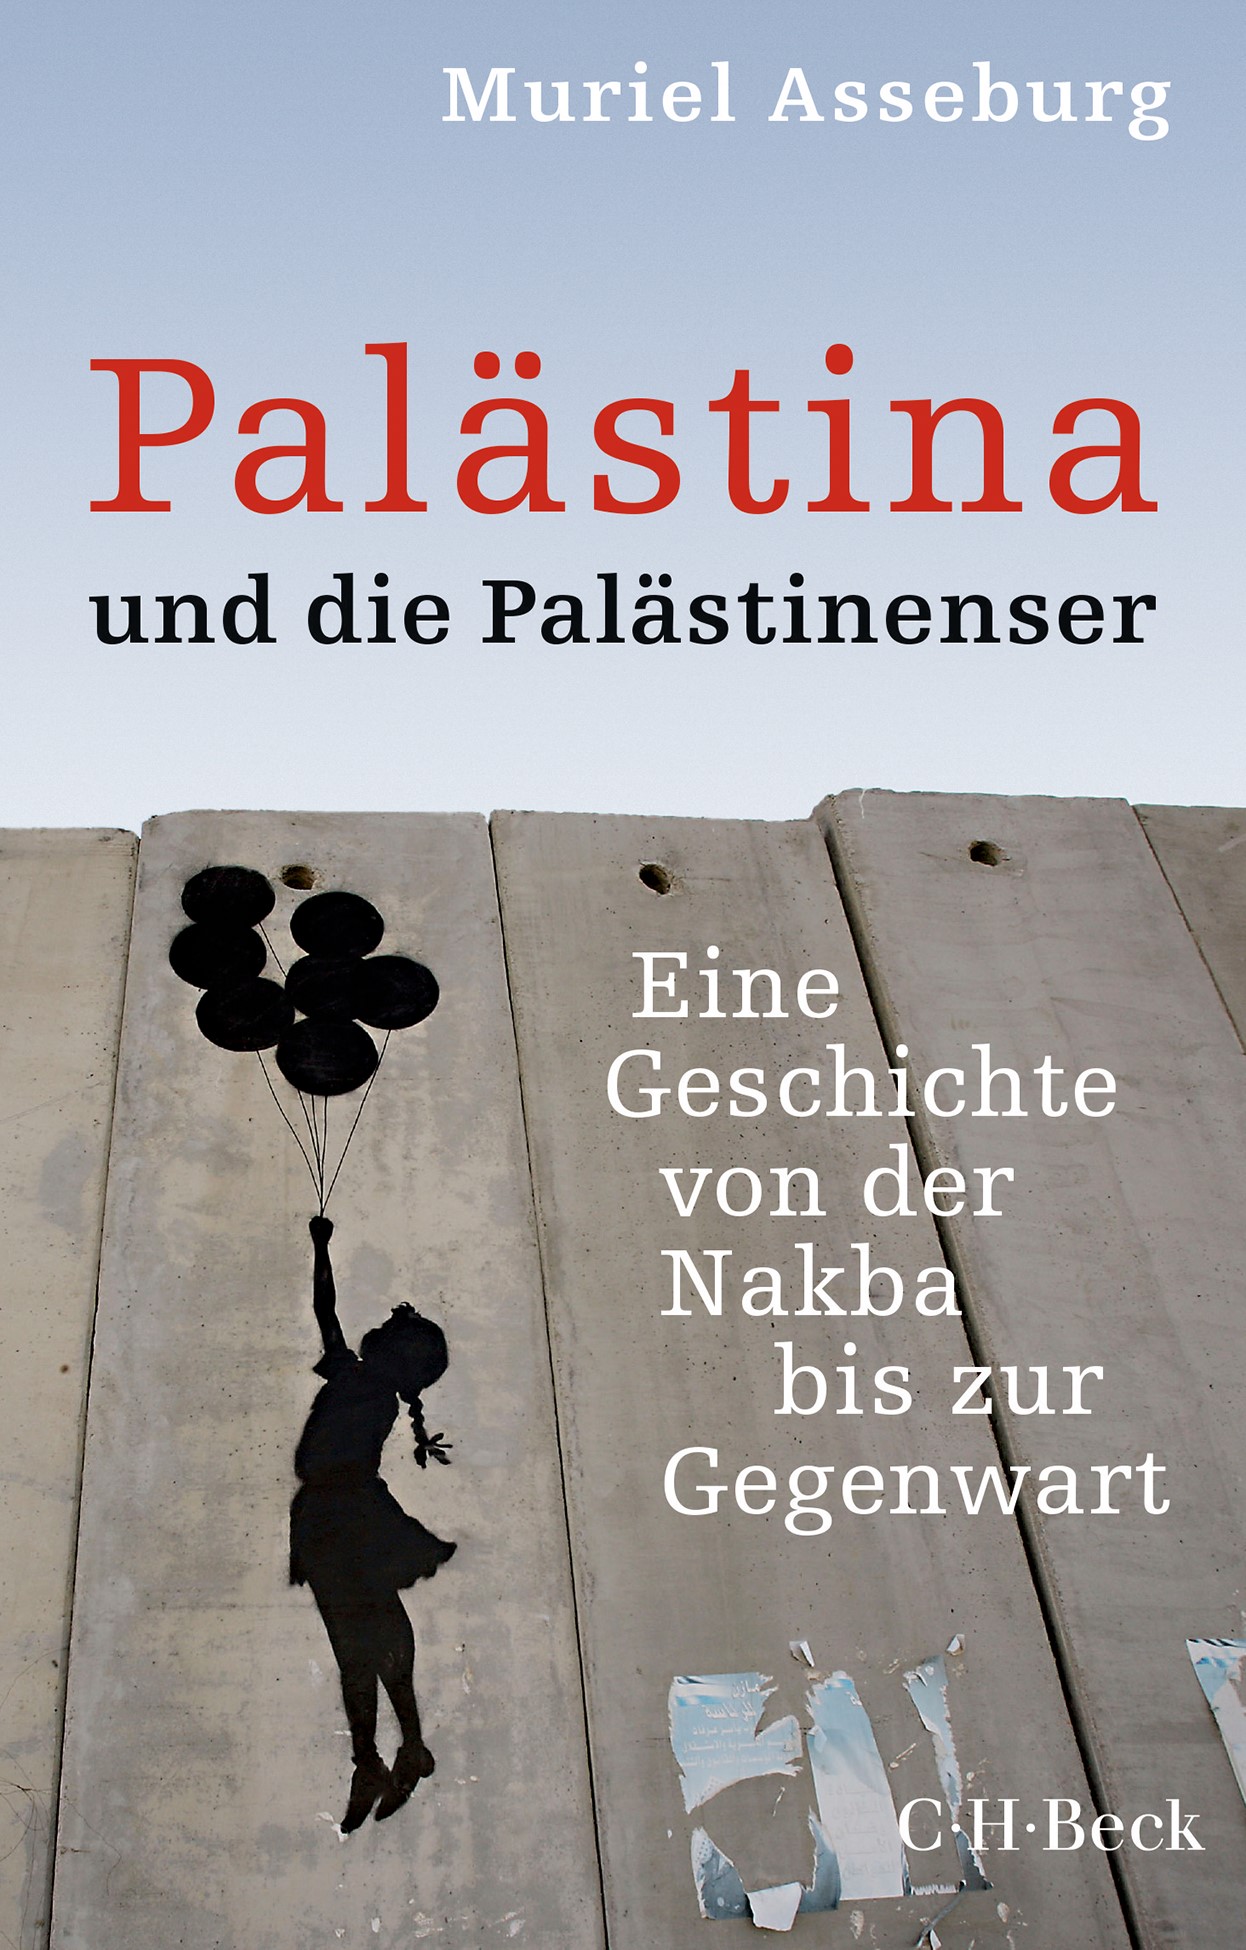 Muriel Asseburg Palästina und die Palästinenser. C.H.Beck Verlag